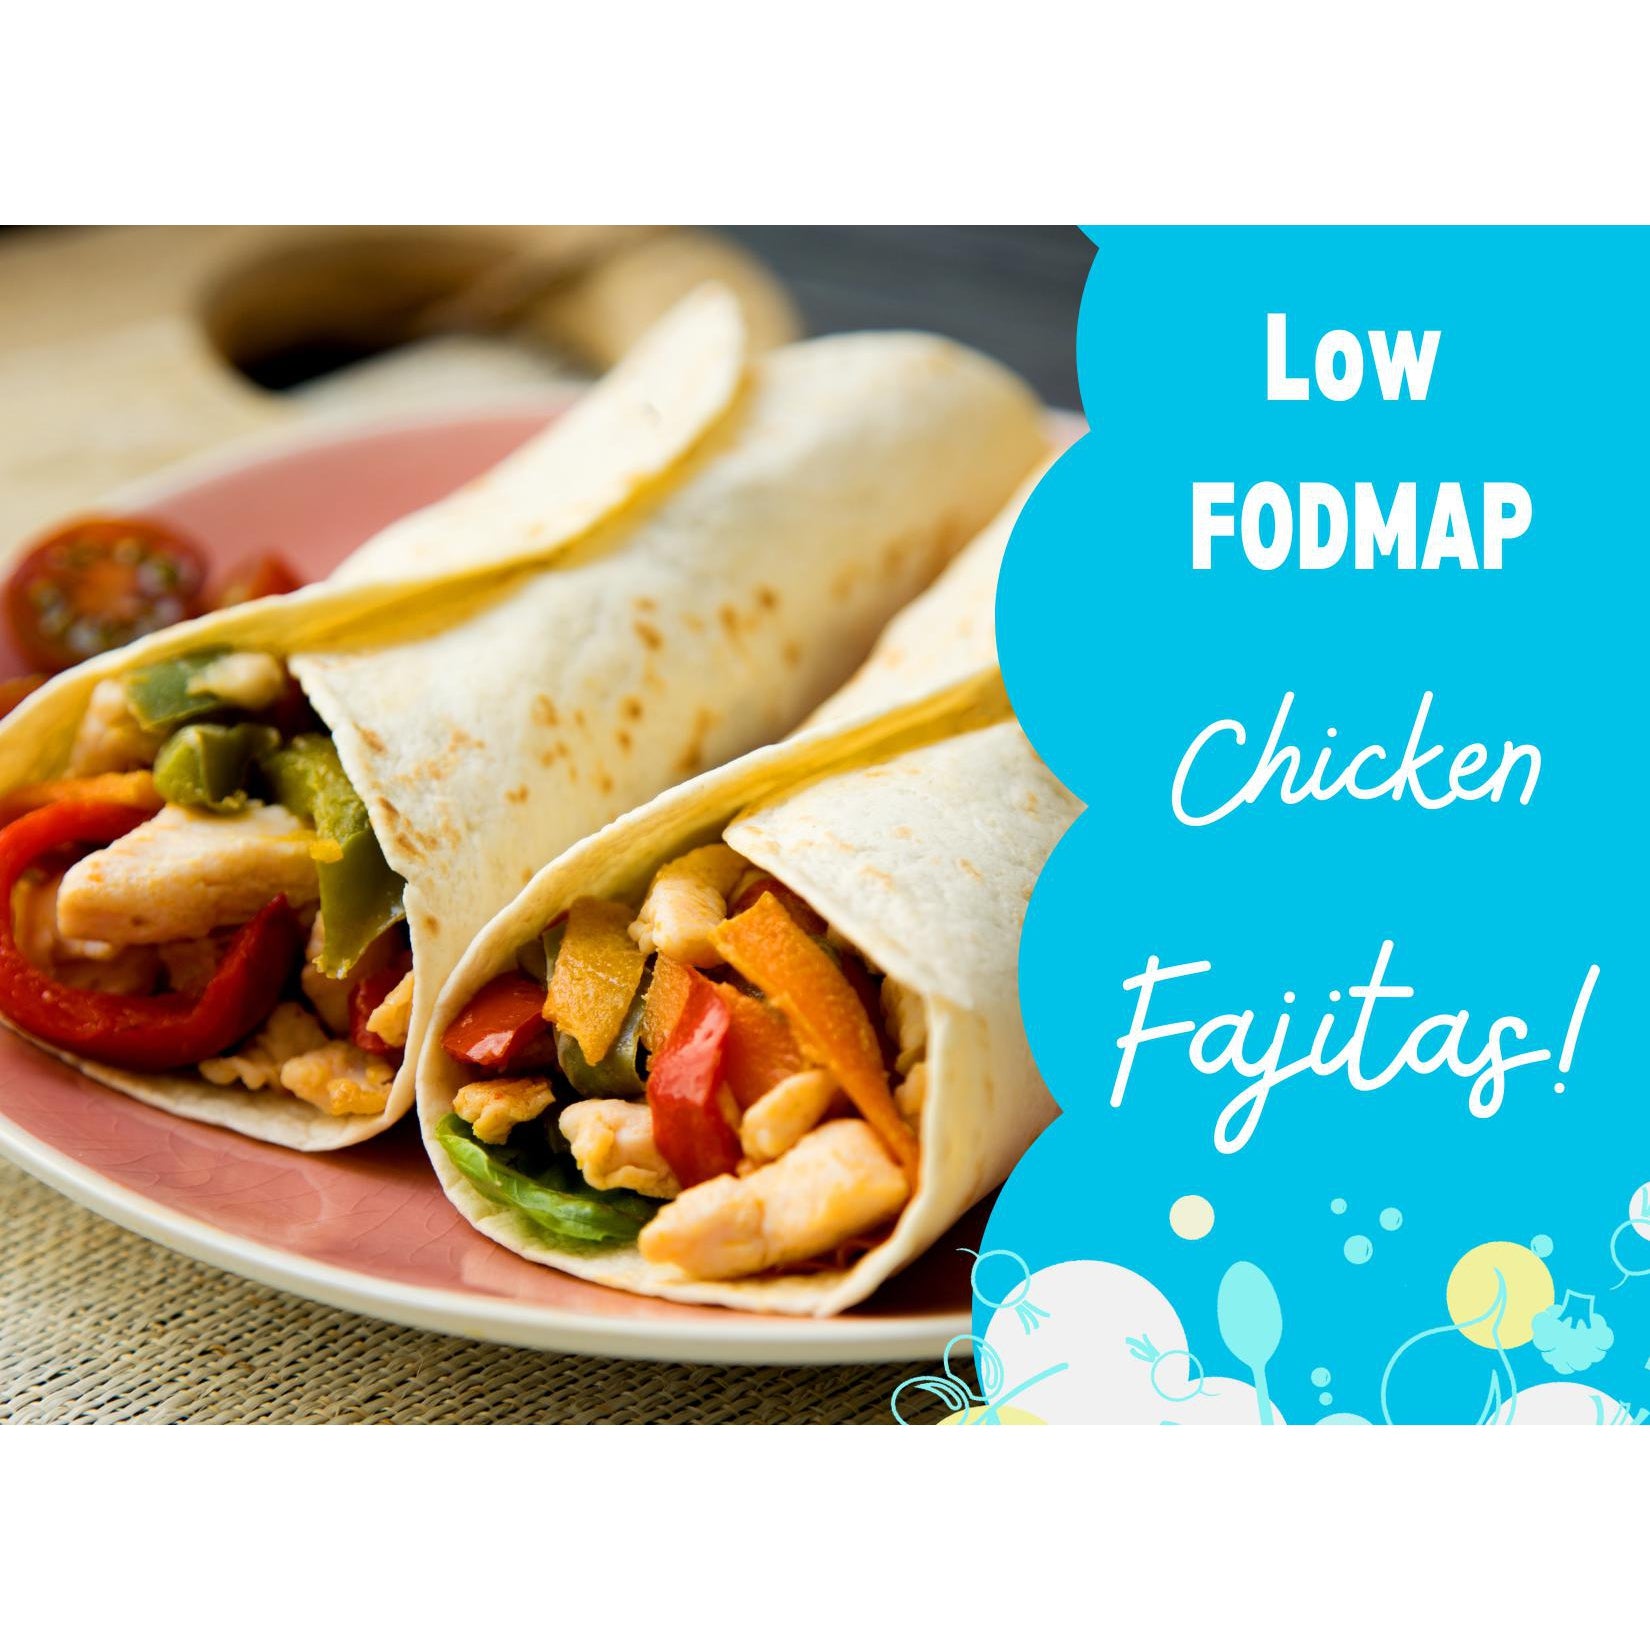 Tasty Low FODMAP Chicken Fajitas!